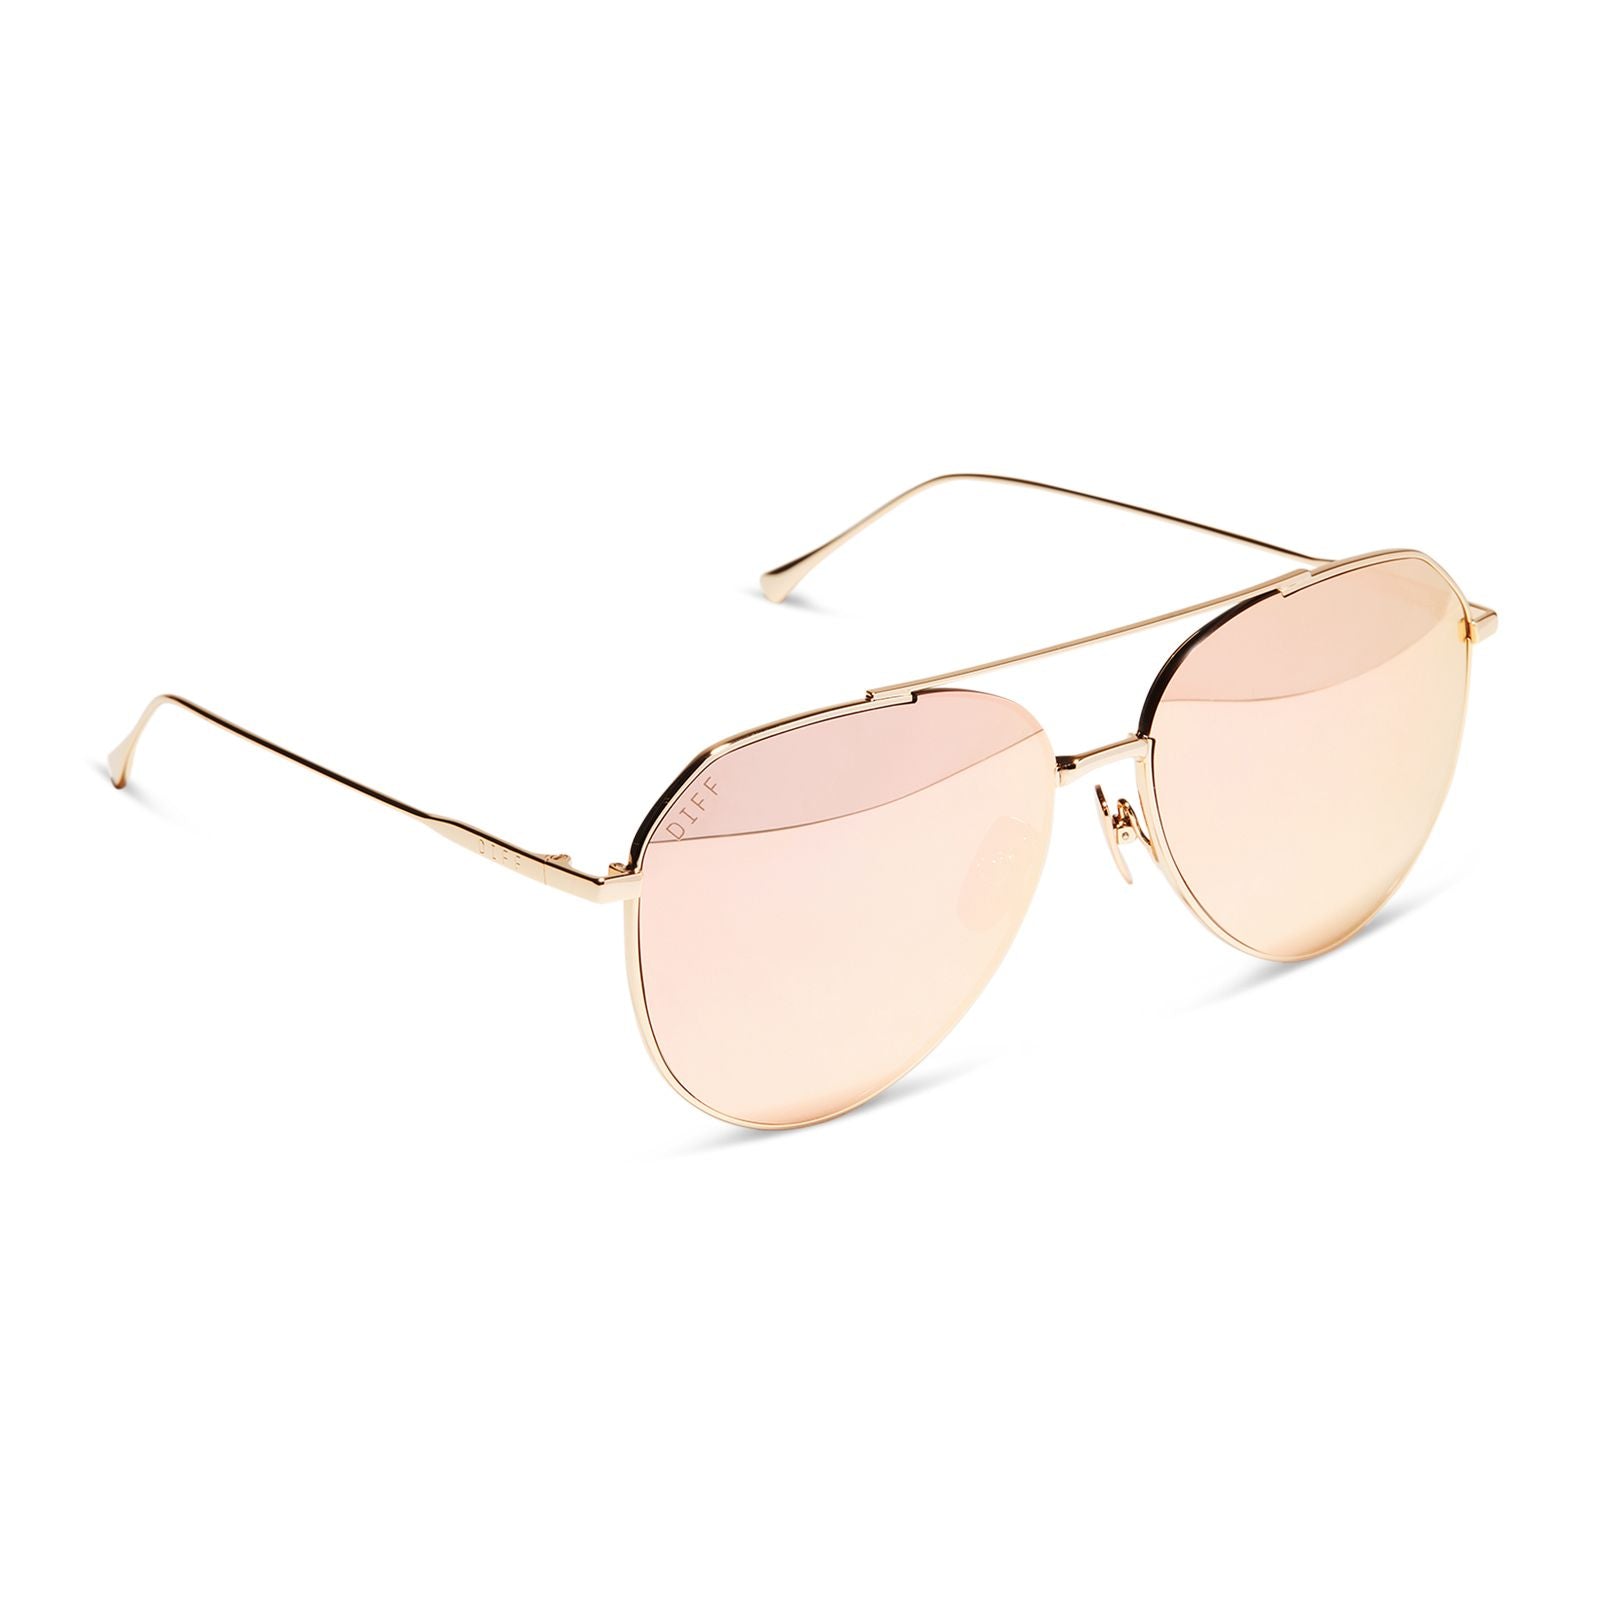 Dash Gold Peach Mirrored Lense Sunglasses - Brazos Avenue Market 